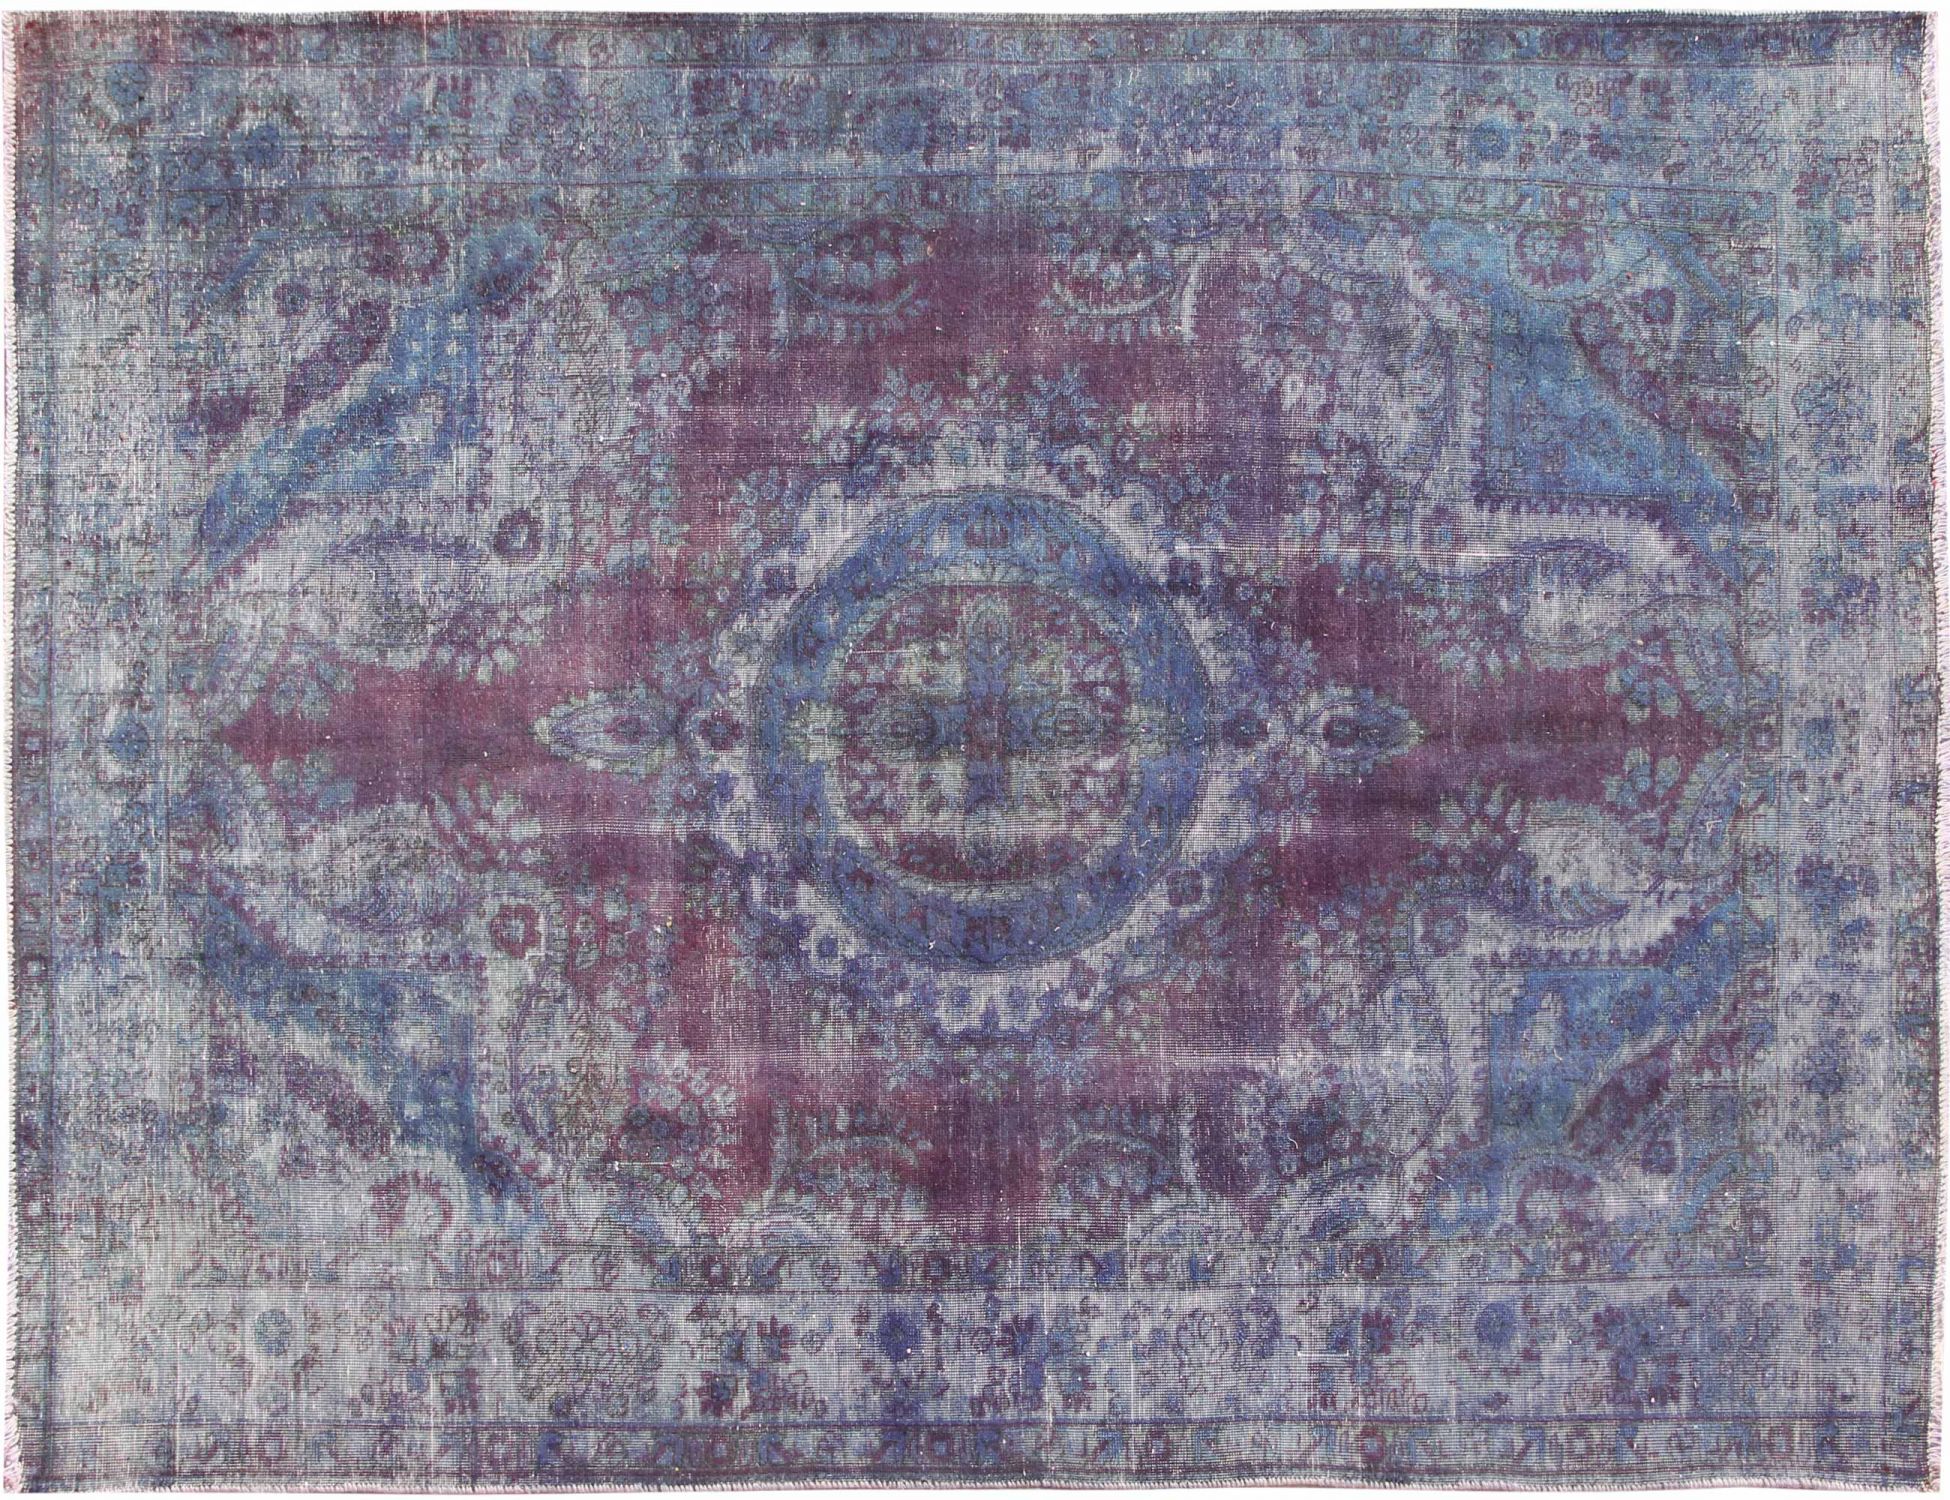 Persischer Vintage Teppich  blau <br/>285 x 190 cm